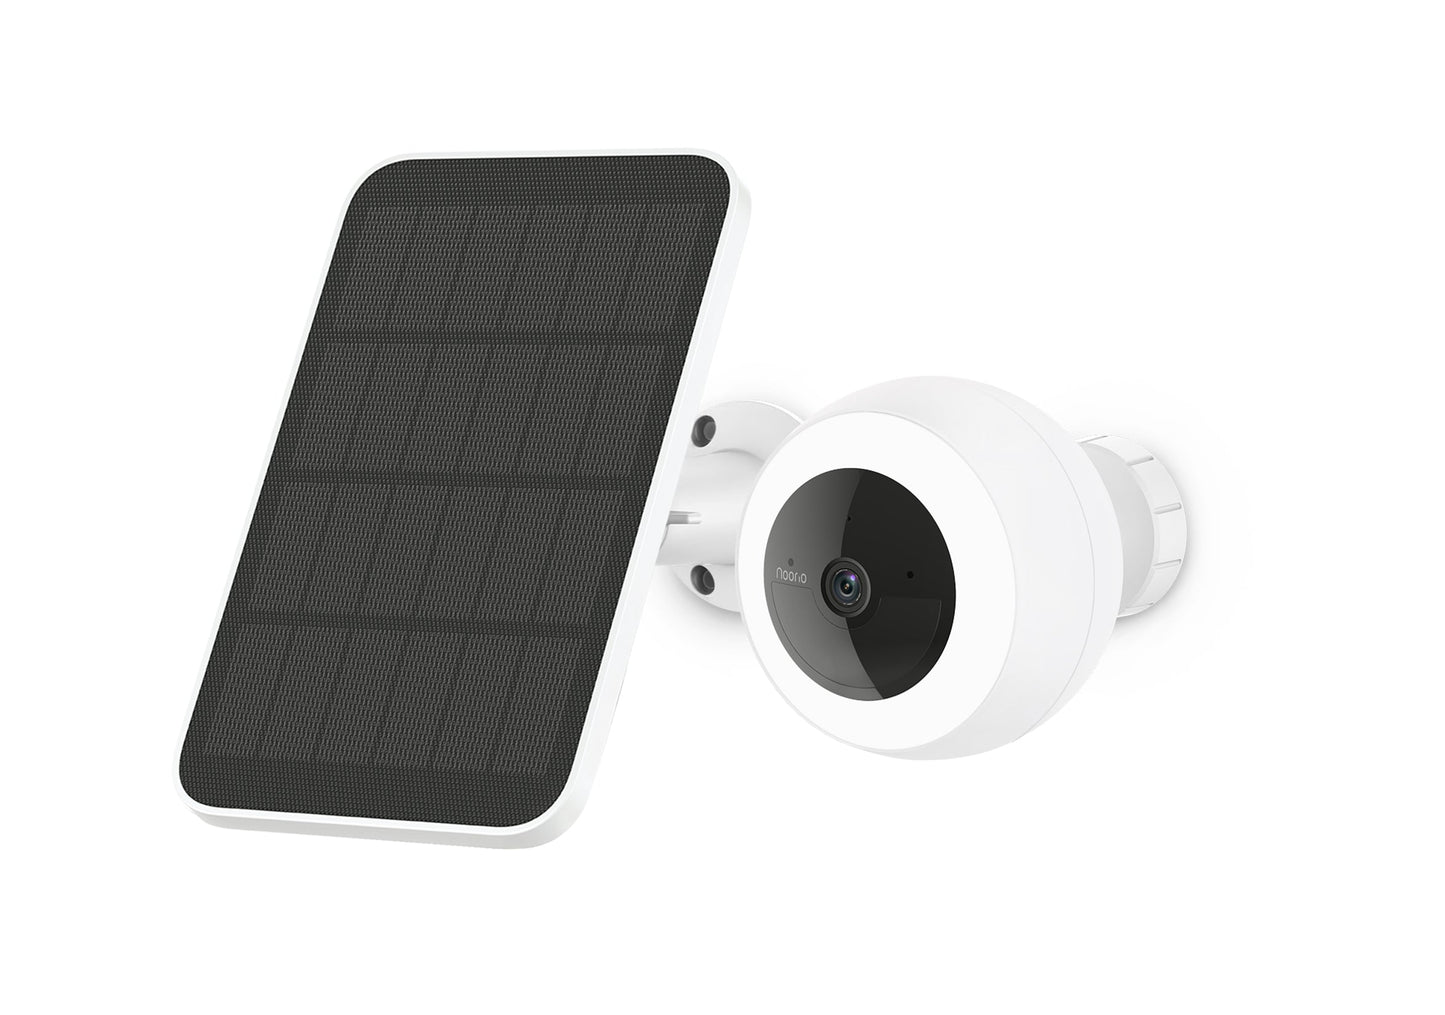 Noorio security cameras with solar panel system